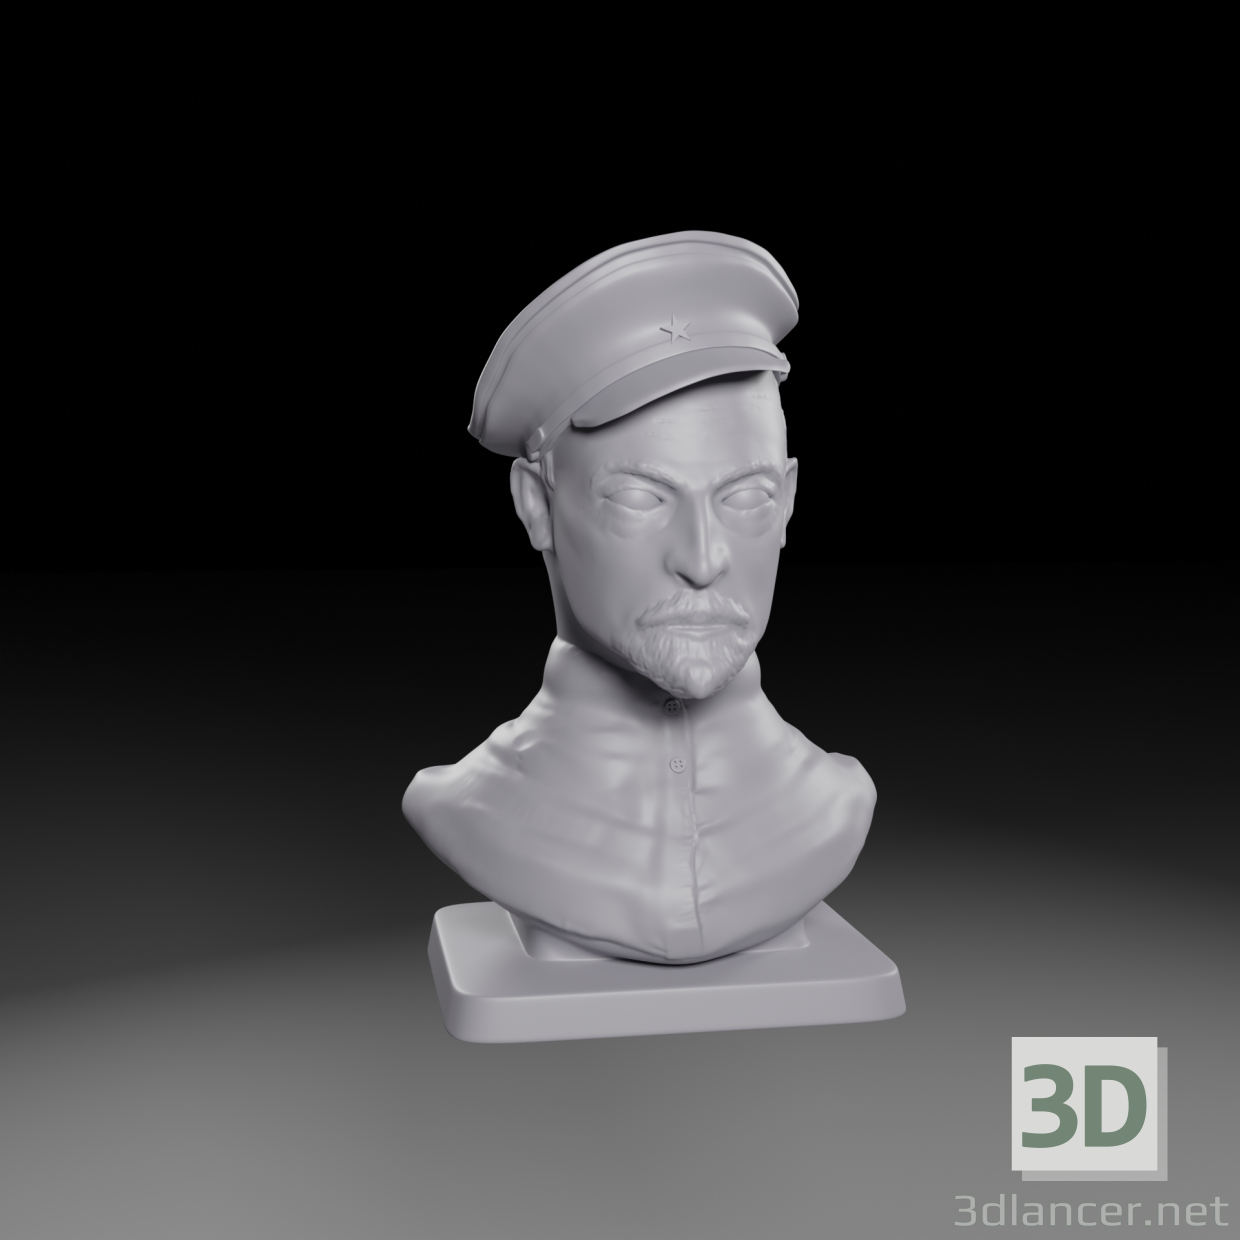 Felix Dserschinski 3D-Modell kaufen - Rendern